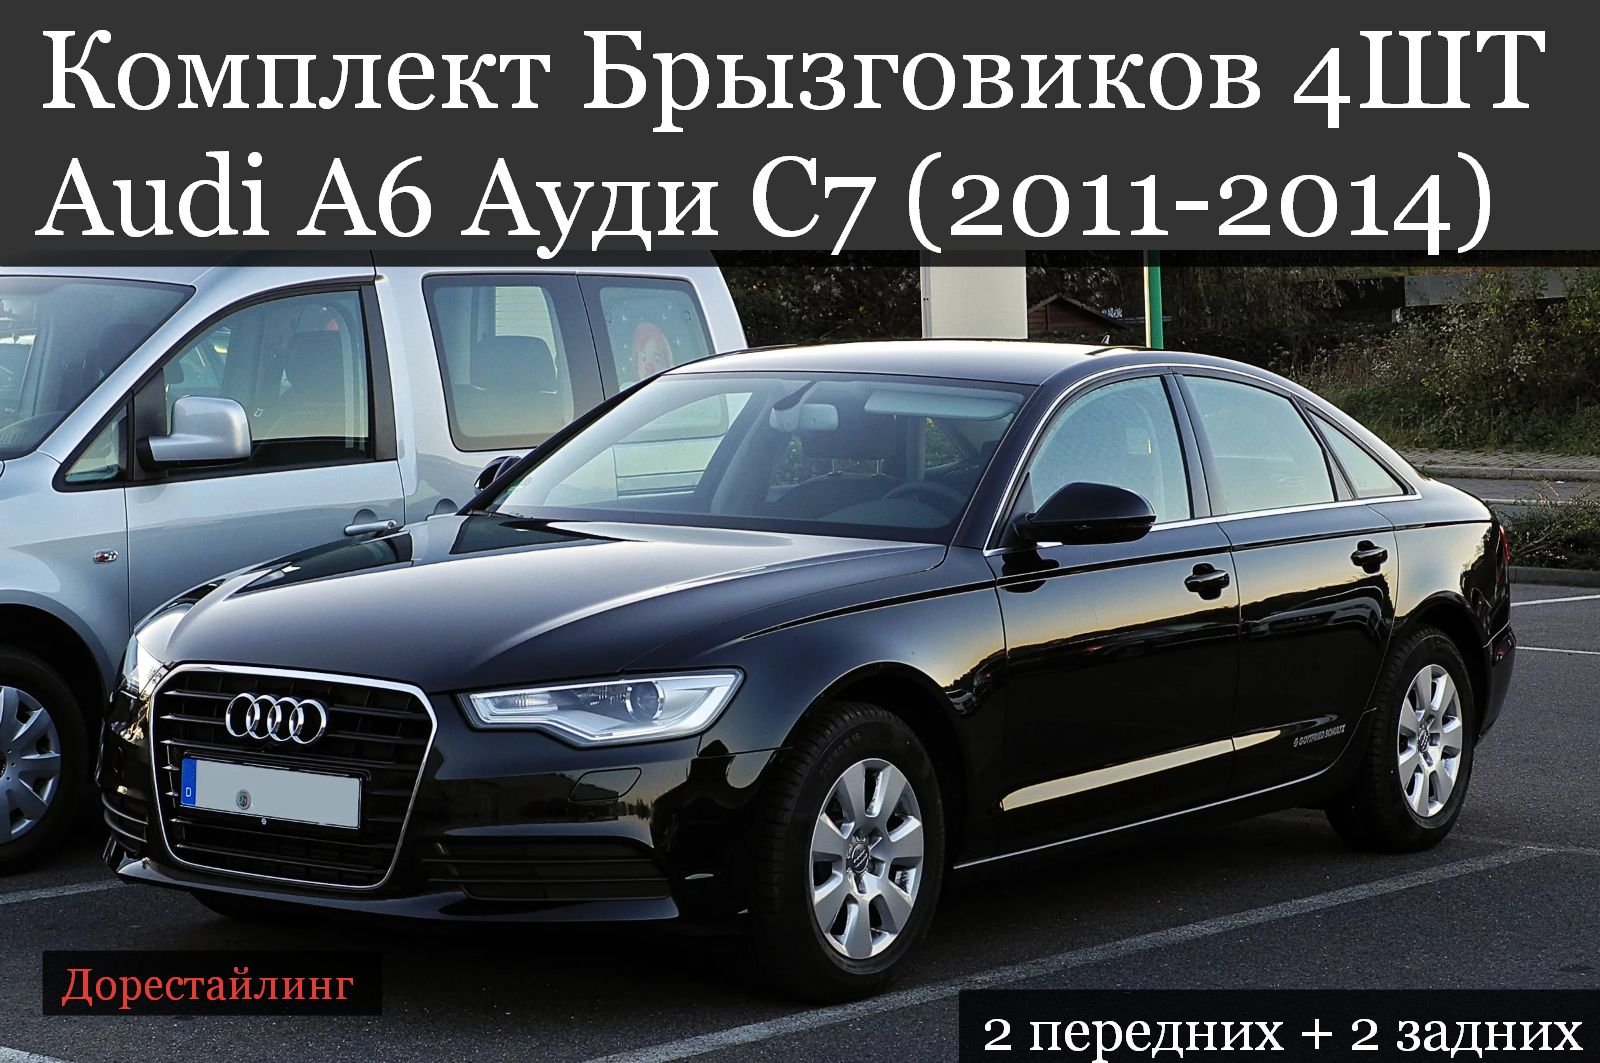 Audi a6 2011. Ауди а6 2011. Audi a6 c7. Audi a6 c6 2011. Авито купить машину ауди